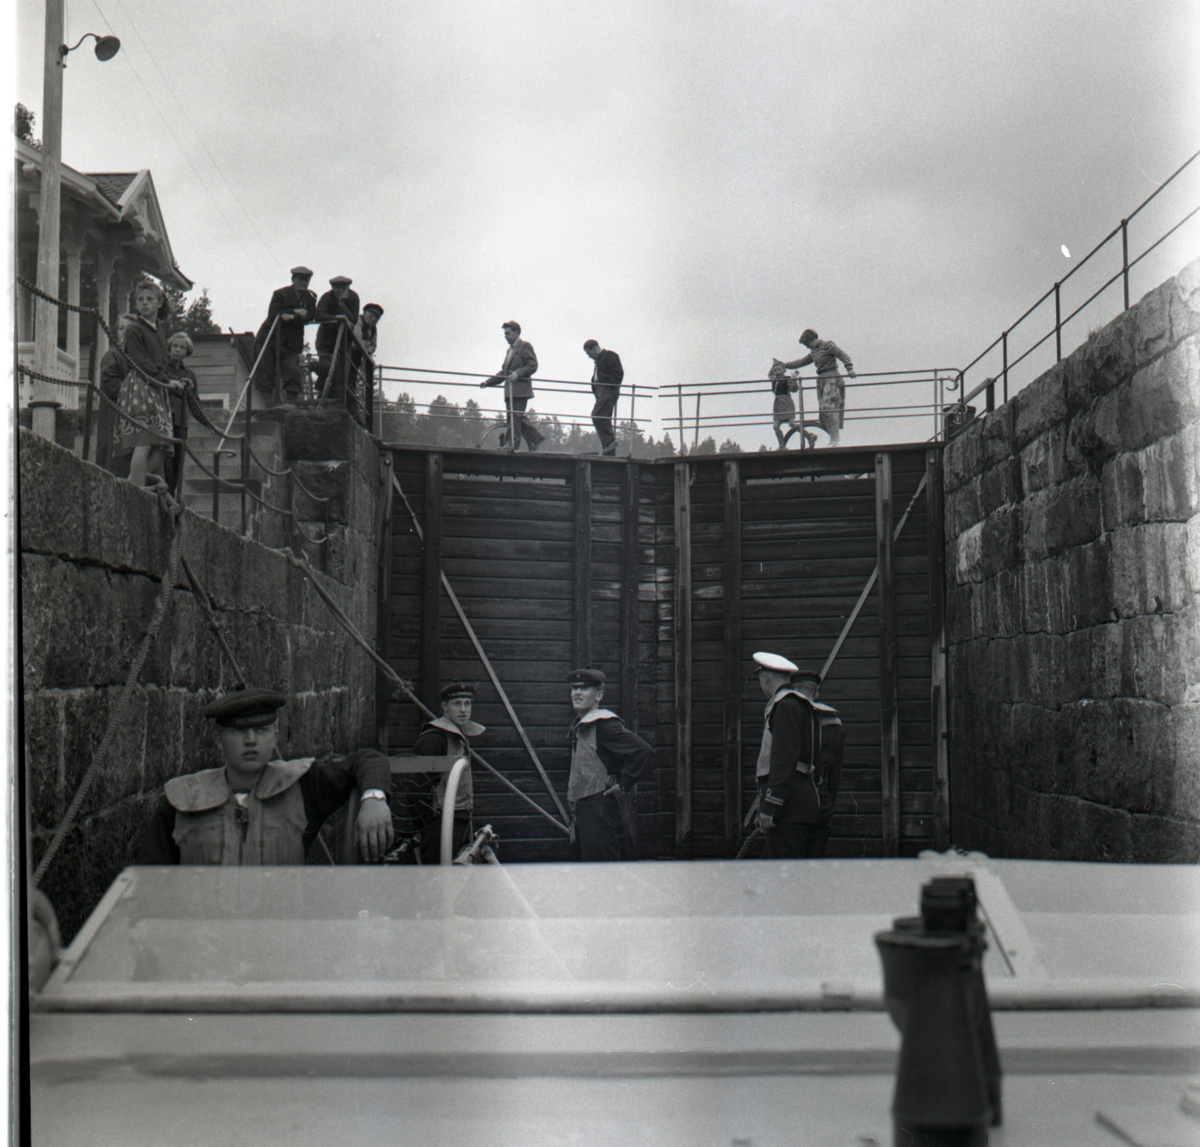 Samlefoto: Elco-klasse MTB-er gjennom Bandak-kanalen i juli 1953.
Slusekjøring.